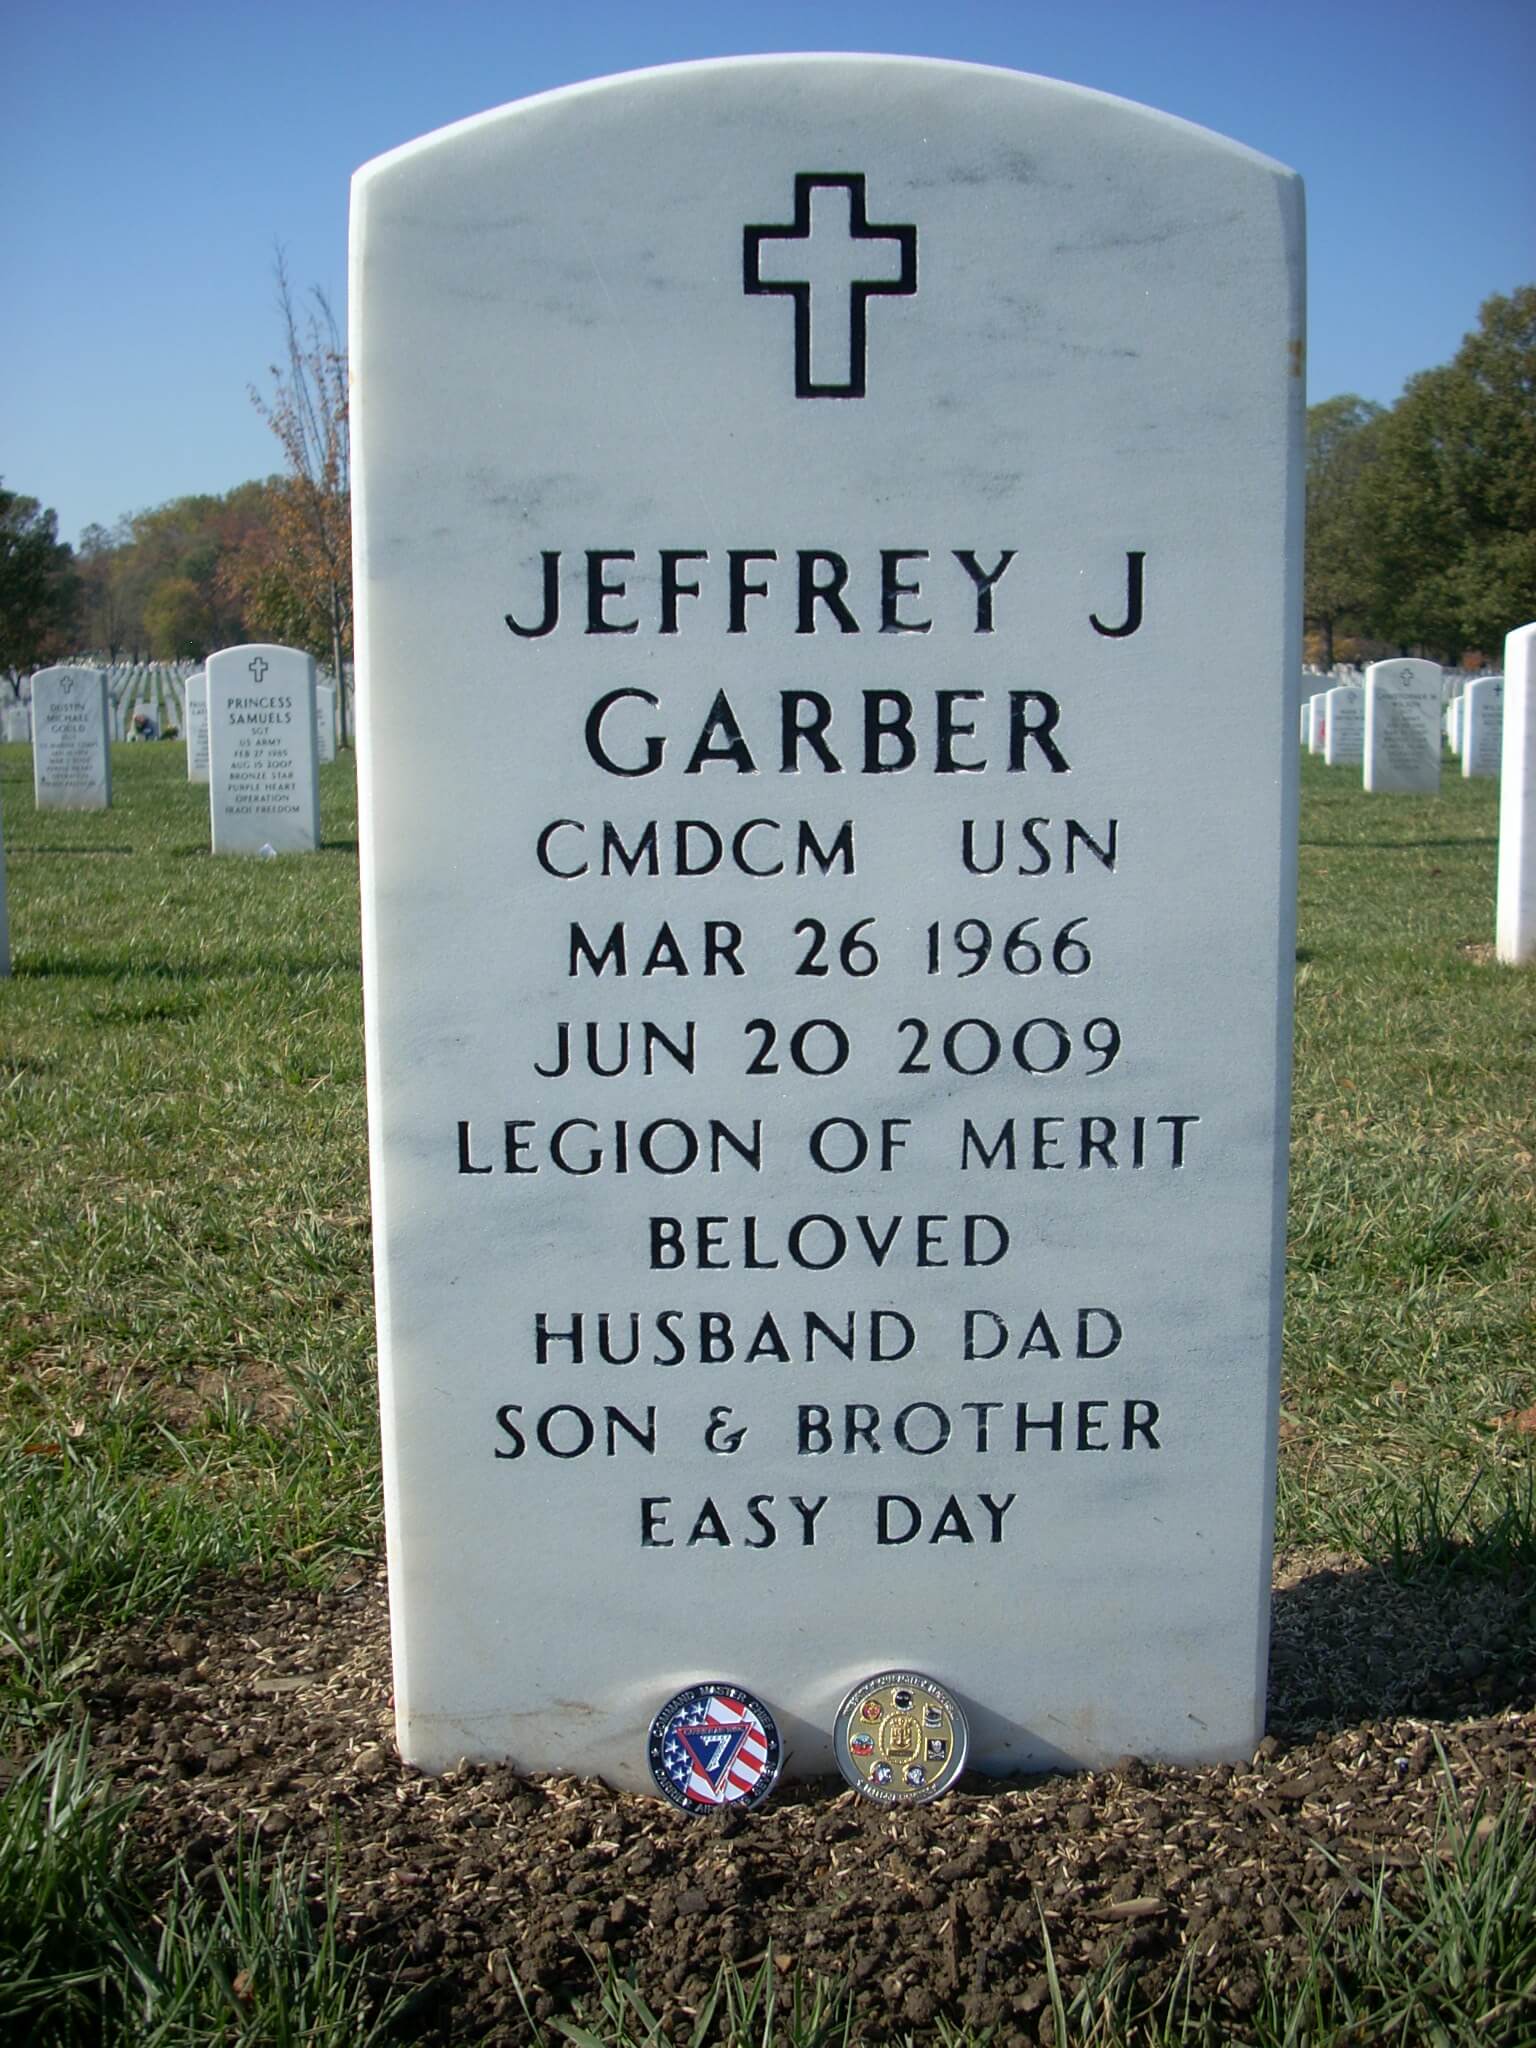 jjgarber-gravesite-photo-by-holly-july-2011-002